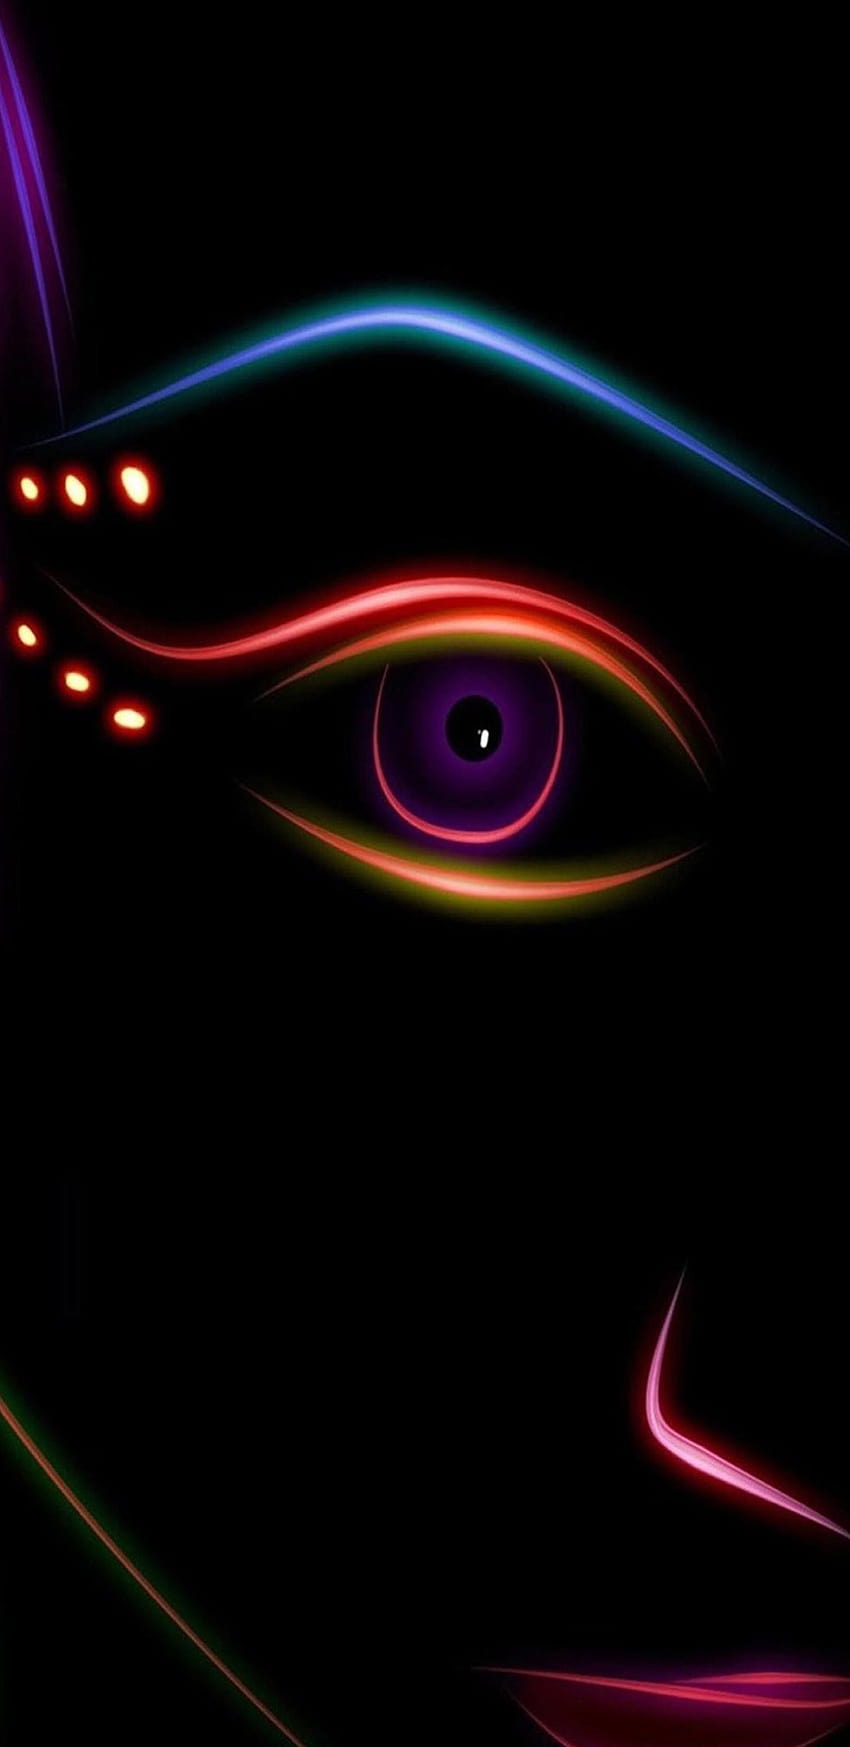 Karanlık, Neon, yüz, desen, galaksi, renk, soyut, samsung galaxy amoled neon HD telefon duvar kağıdı